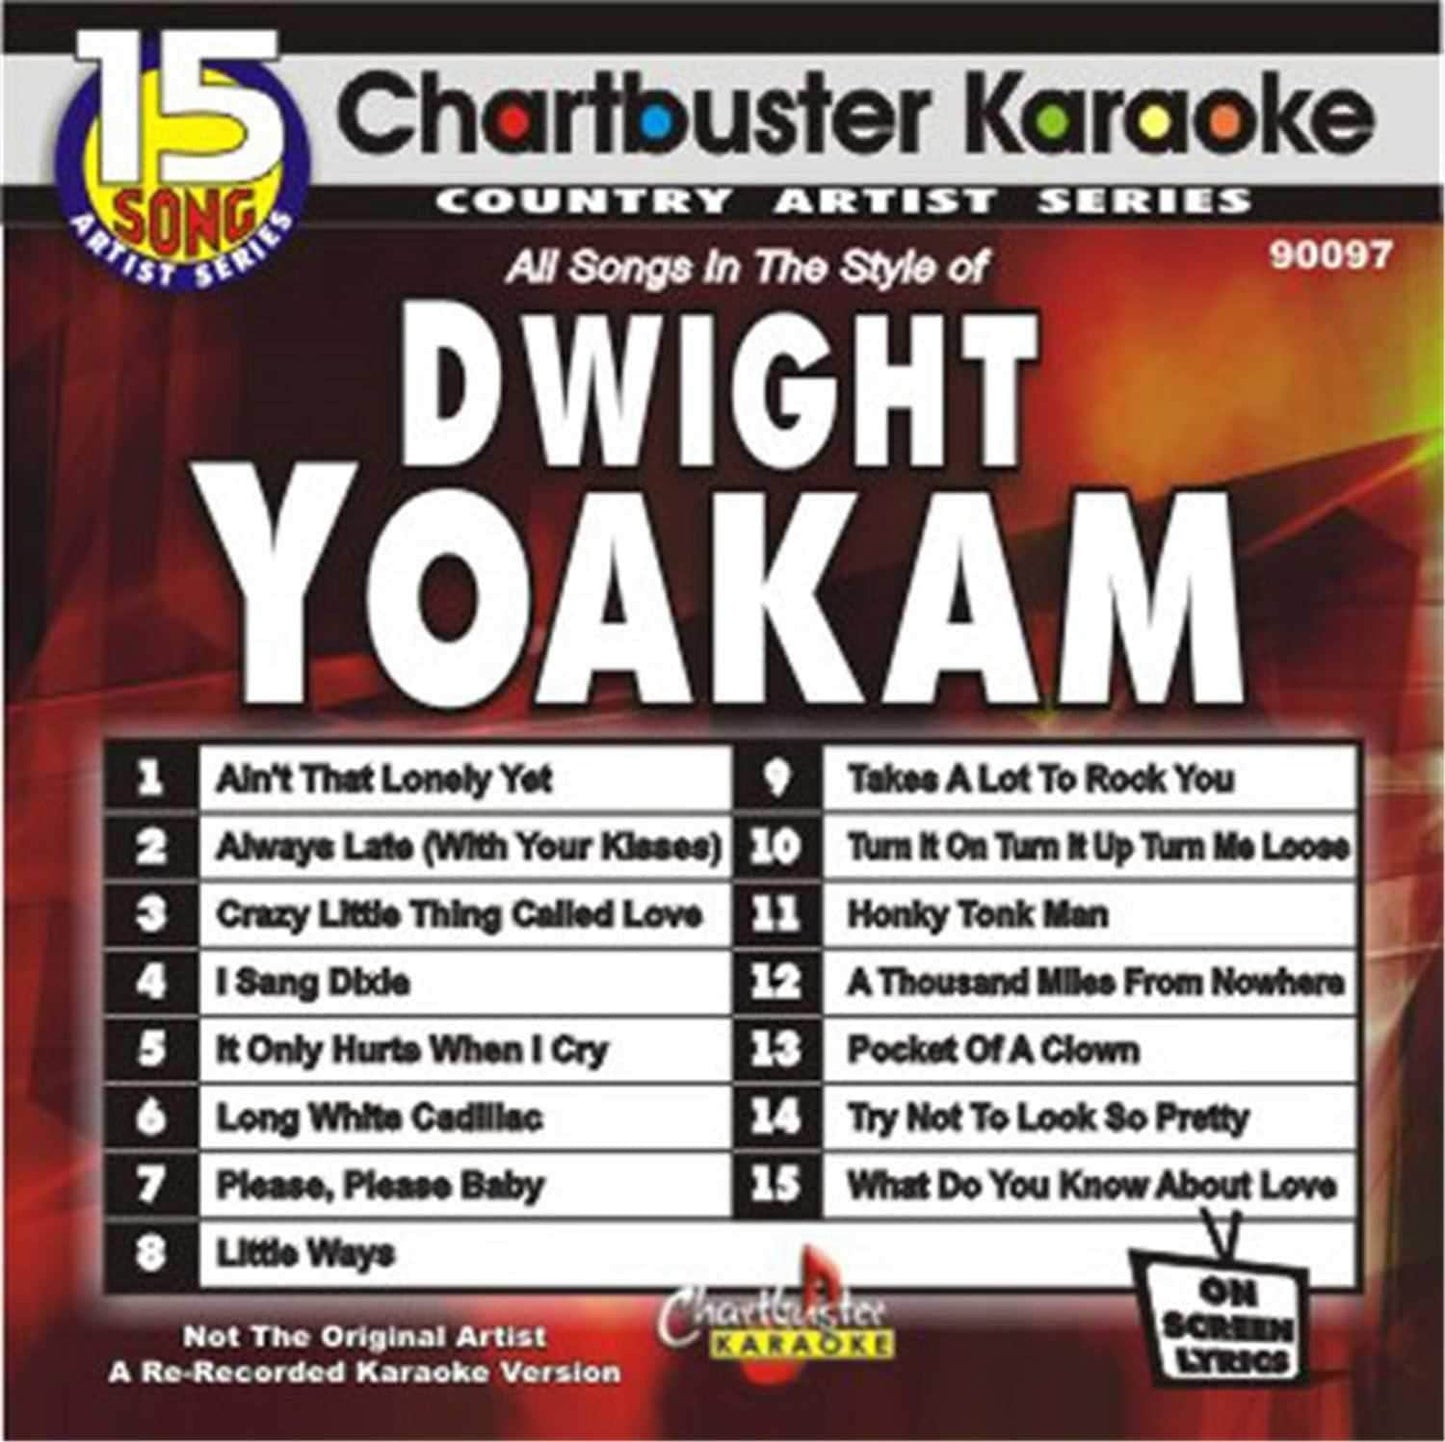 Chartbuster Karaoke Artist Dwight Yoakam - ProSound and Stage Lighting